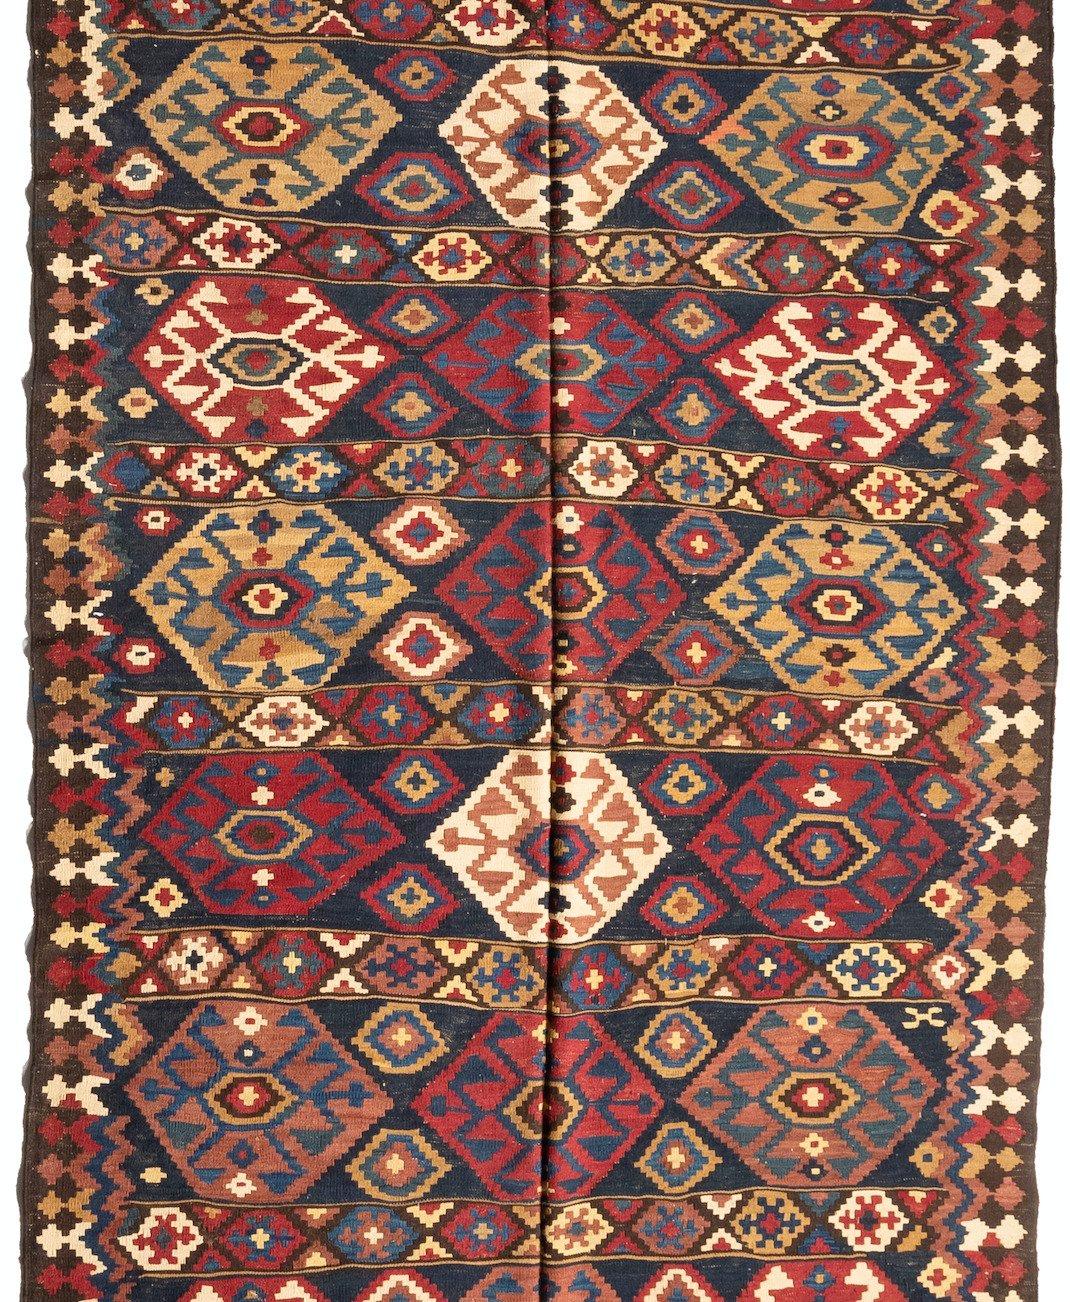 Dieser schöne antike persische Ghashgai-Kilim-Teppich misst 6,5 x 18,9 Fuß und stammt aus den 1950er Jahren.

Provenienz: Auktionshaus Bonhams, London, Vereinigtes Königreich.
 
   